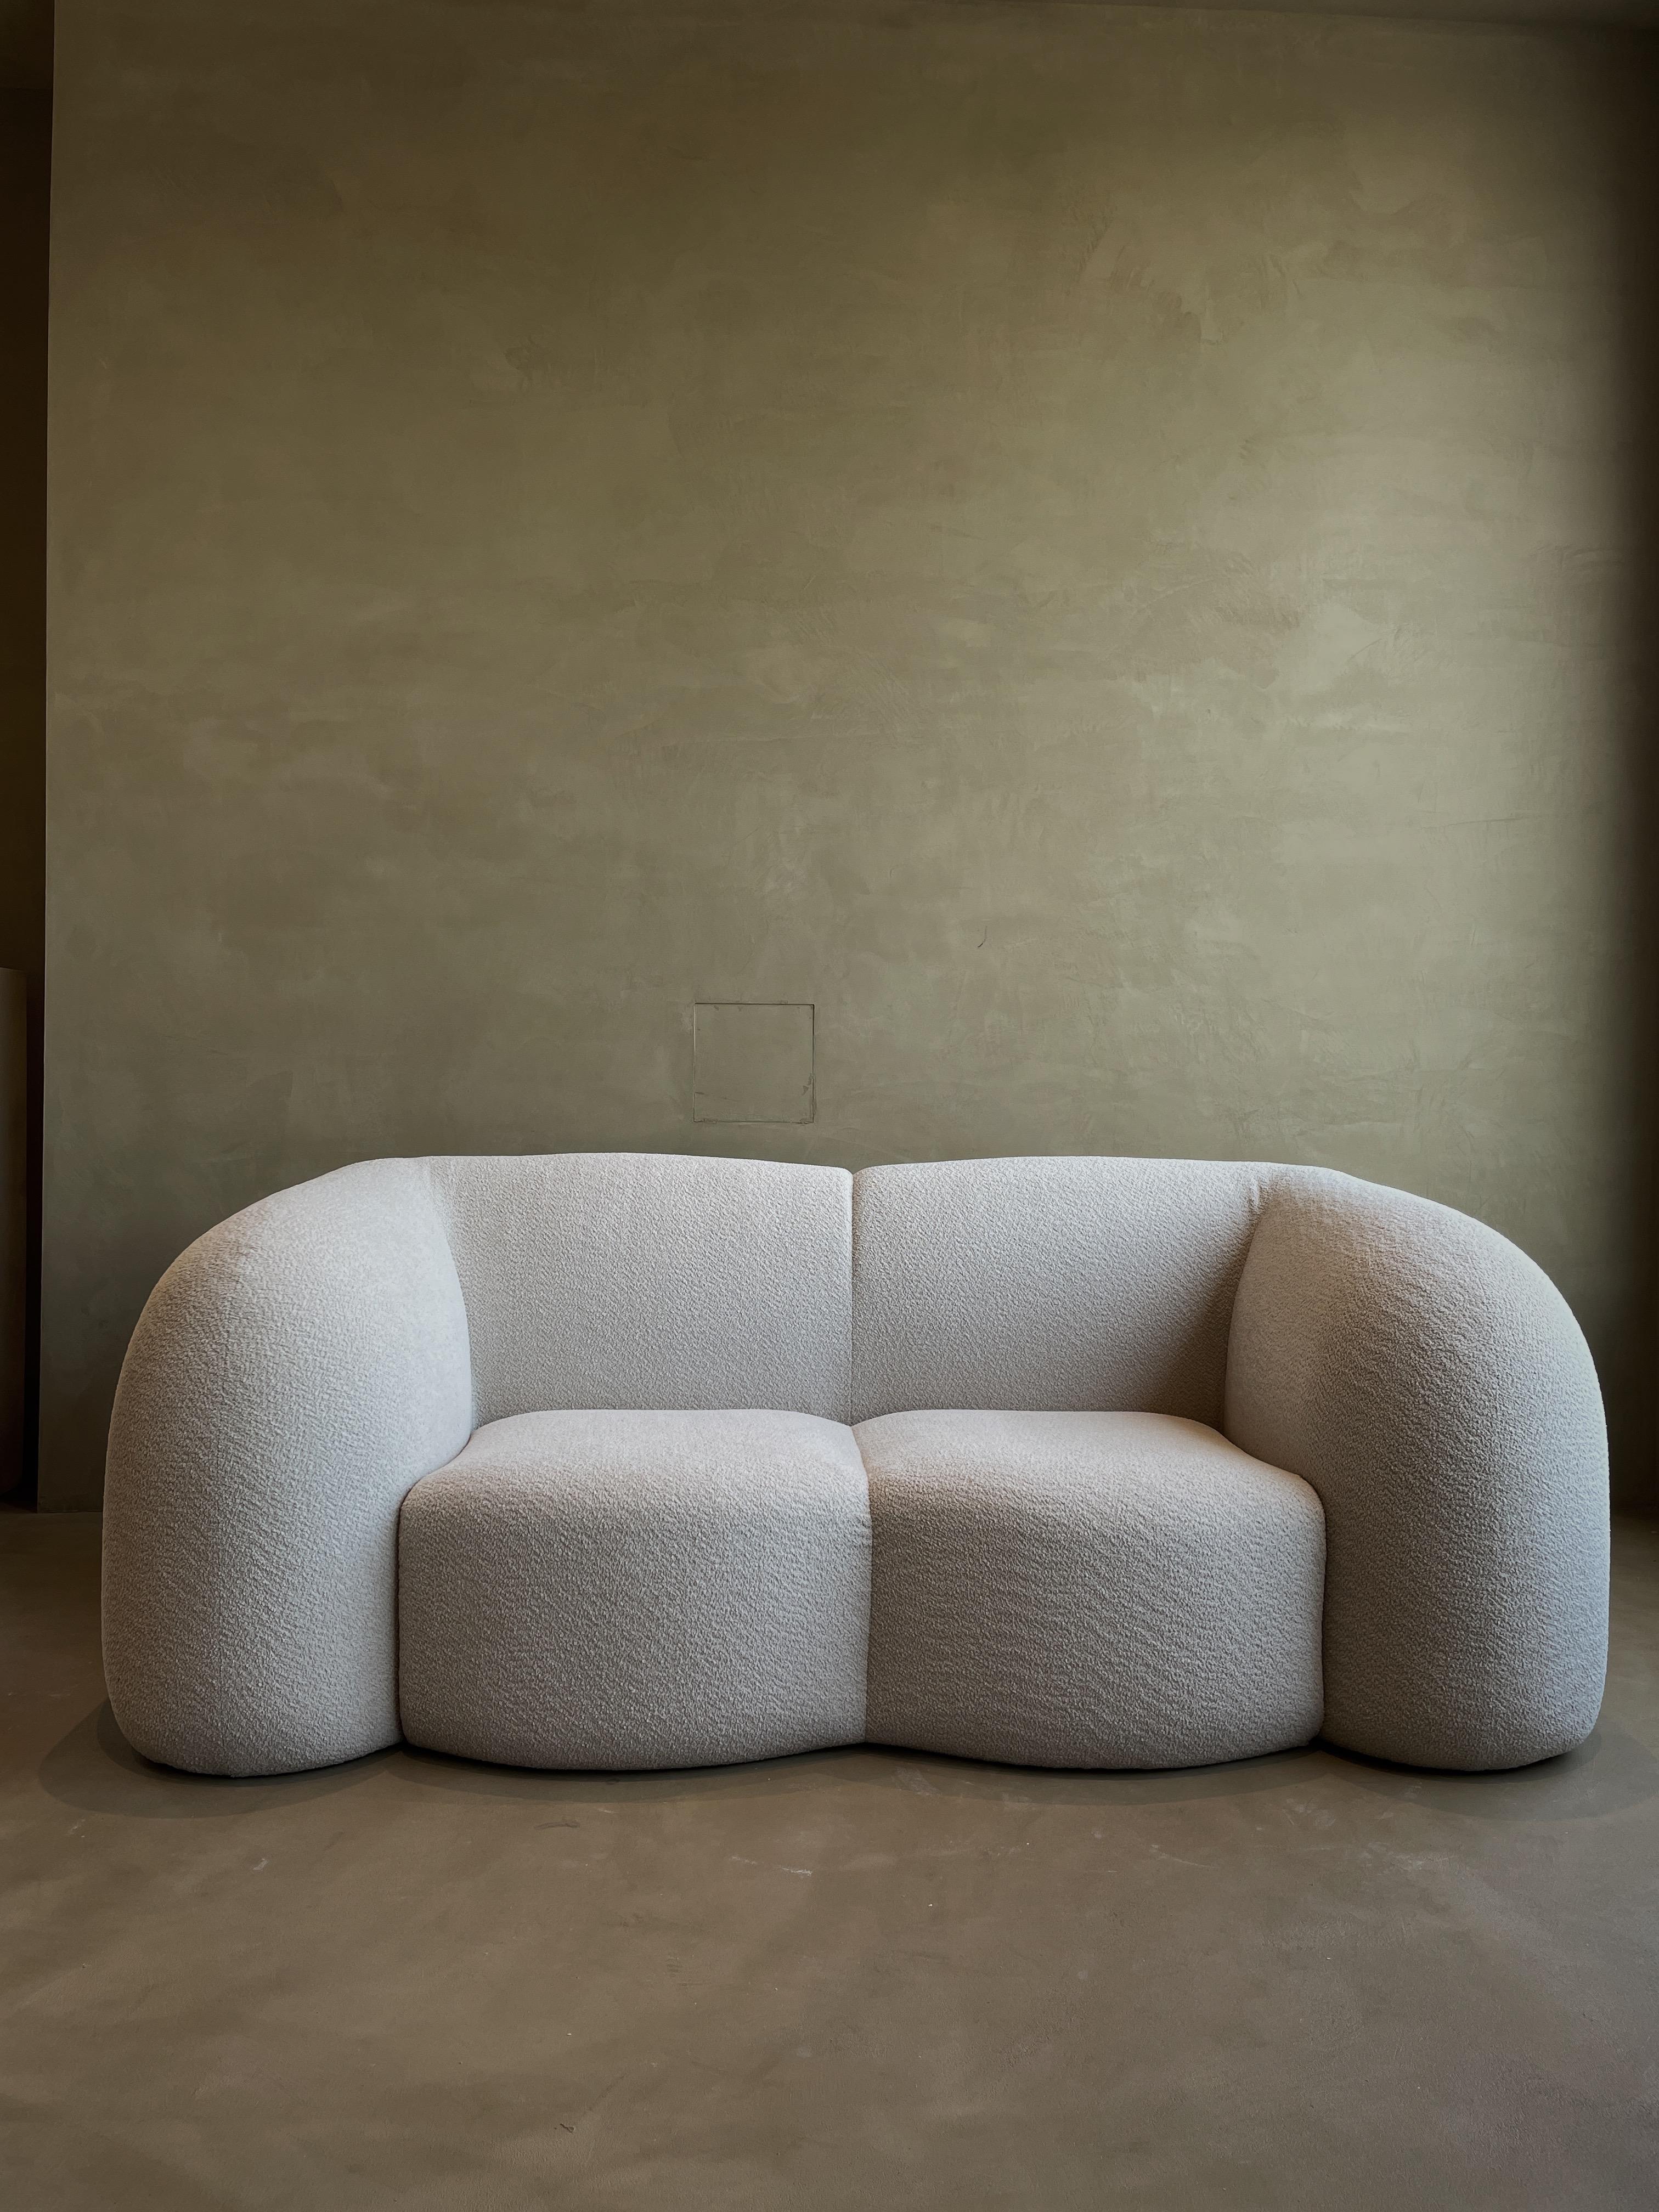 Marshmallow sofa by kar
Abmessungen: B 213,5 x T 103 x H 80 cm
MATERIALIEN: MDF-Rahmen, Stoff
Die Farbe kann angepasst werden. 

Kar ist die Wurzel des Sanskritwortes Karma und bedeutet karmische Wiederholung. Wir suchen nach Ursache und Wirkung in